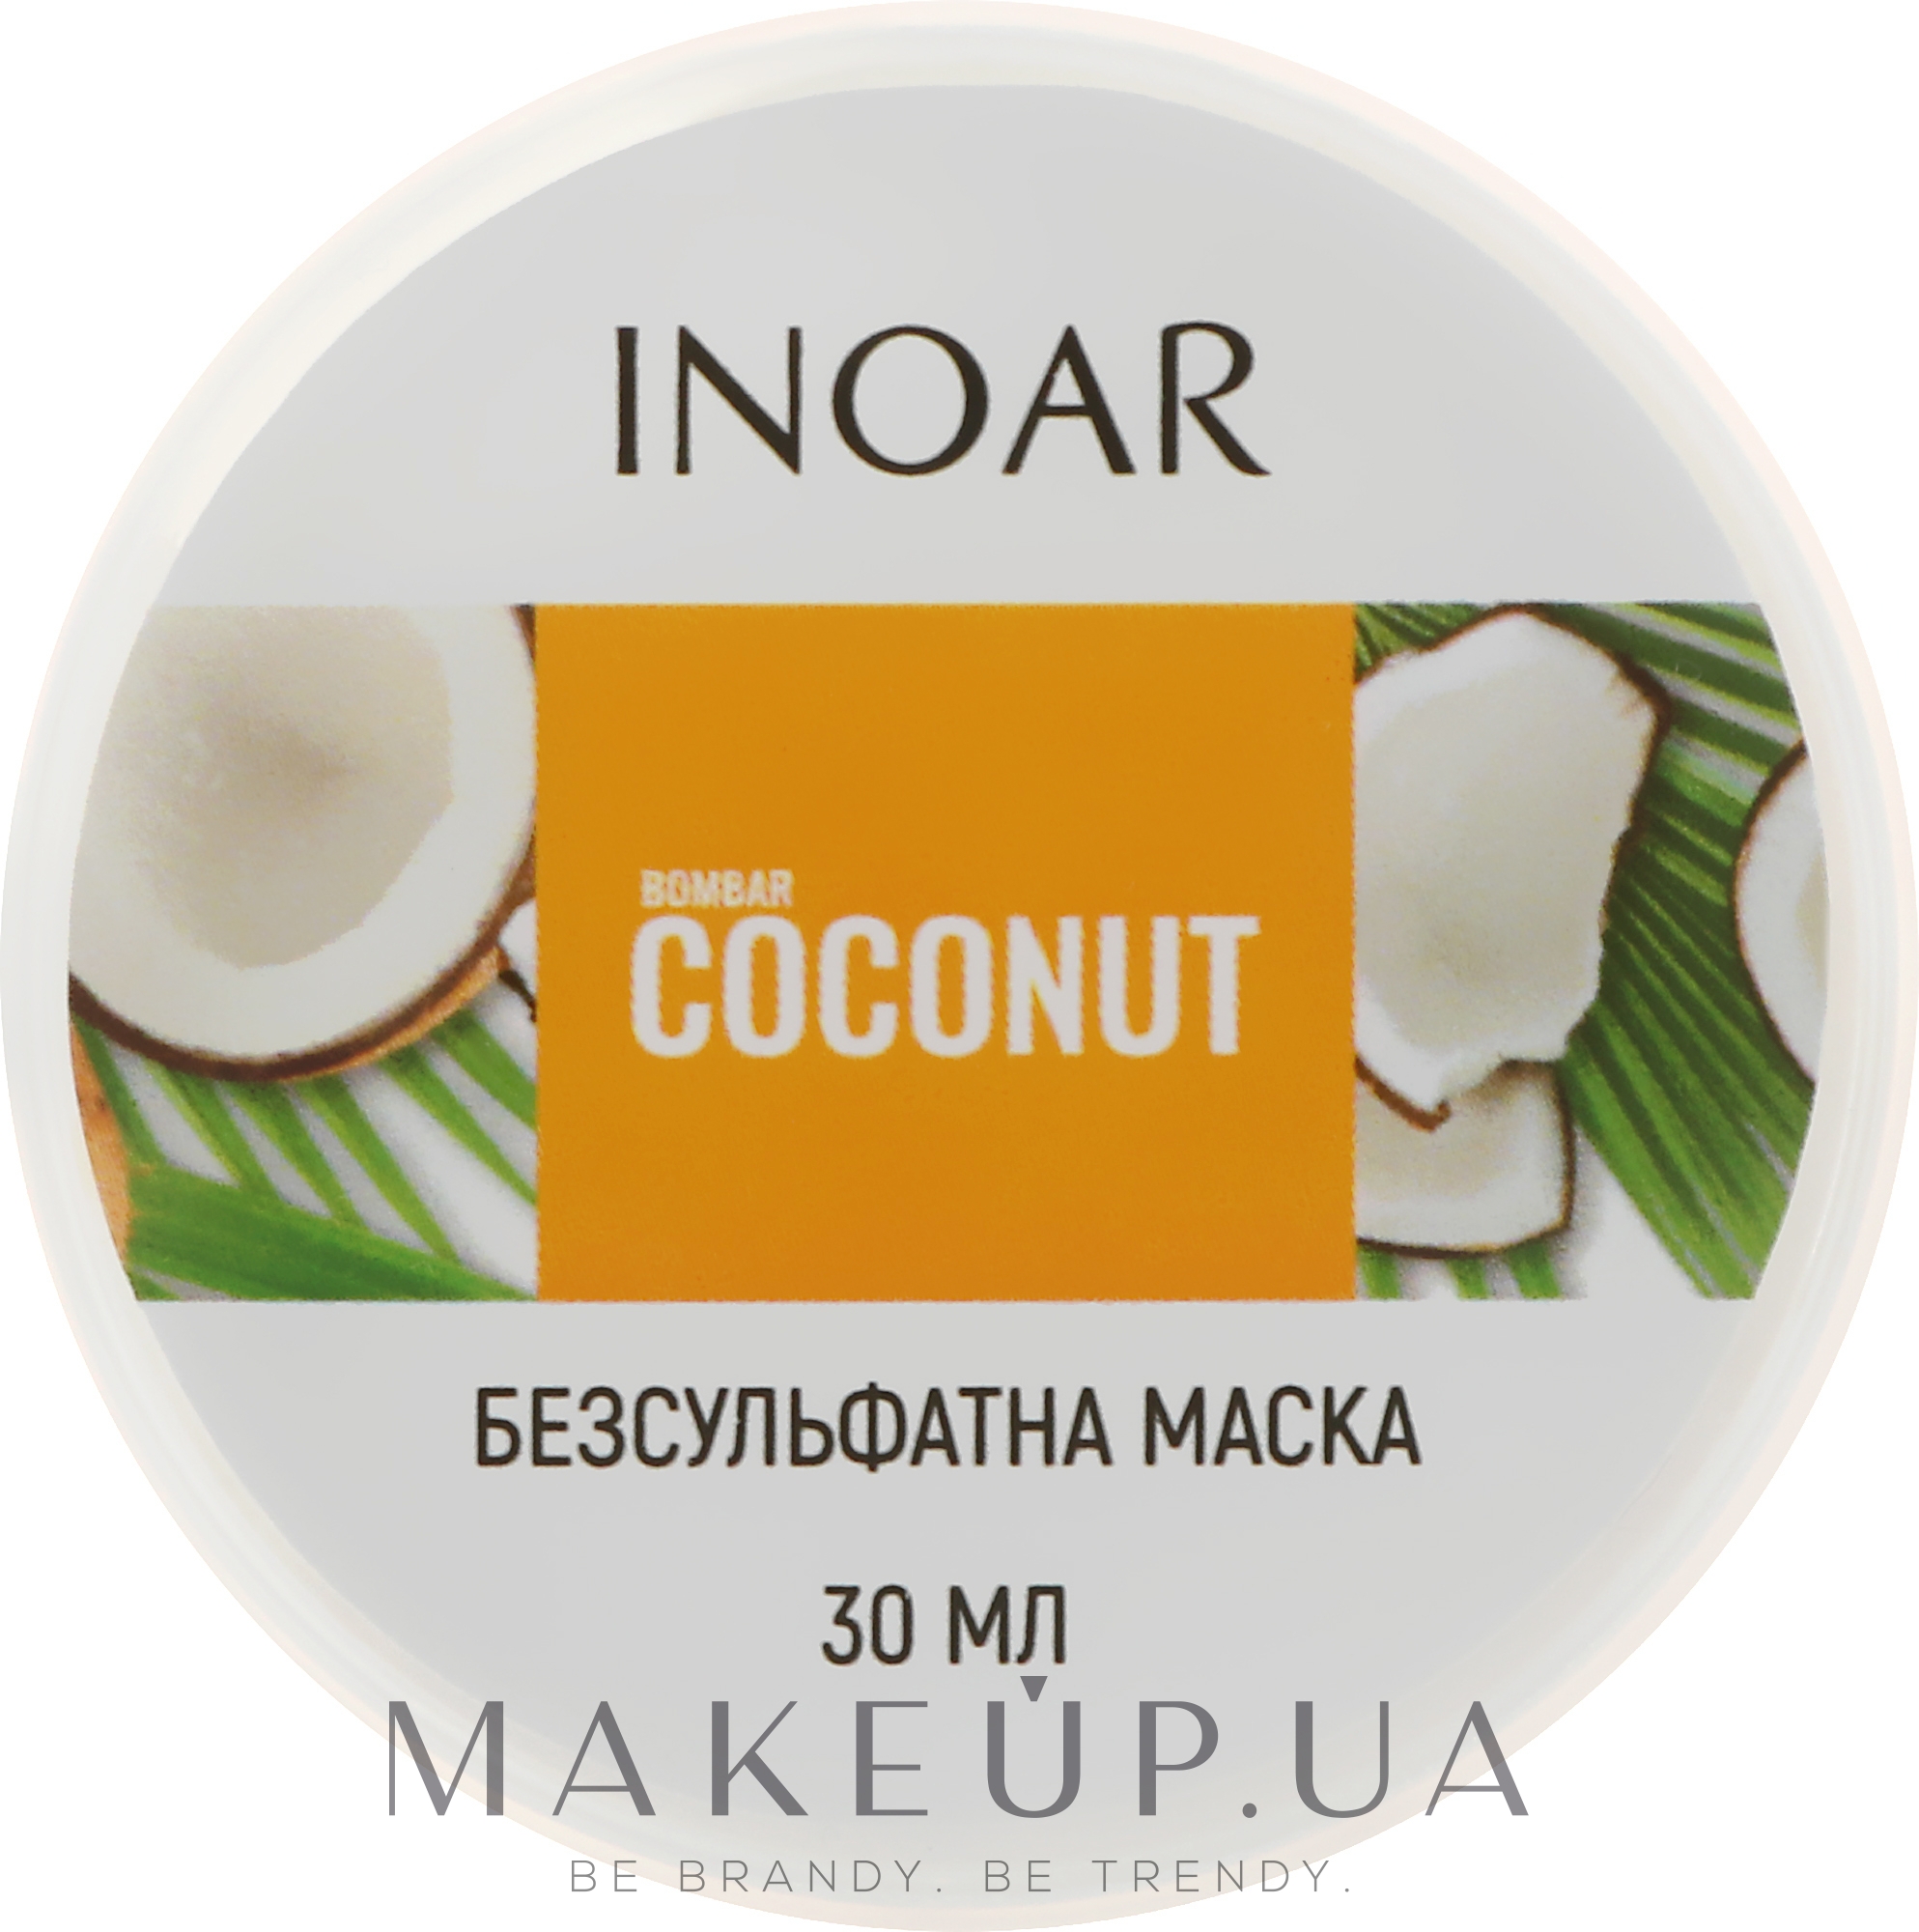 Маска для роста волос без сульфатов "Кокос & Биотин" - Inoar Bombar Coconut Mascara — фото 30ml